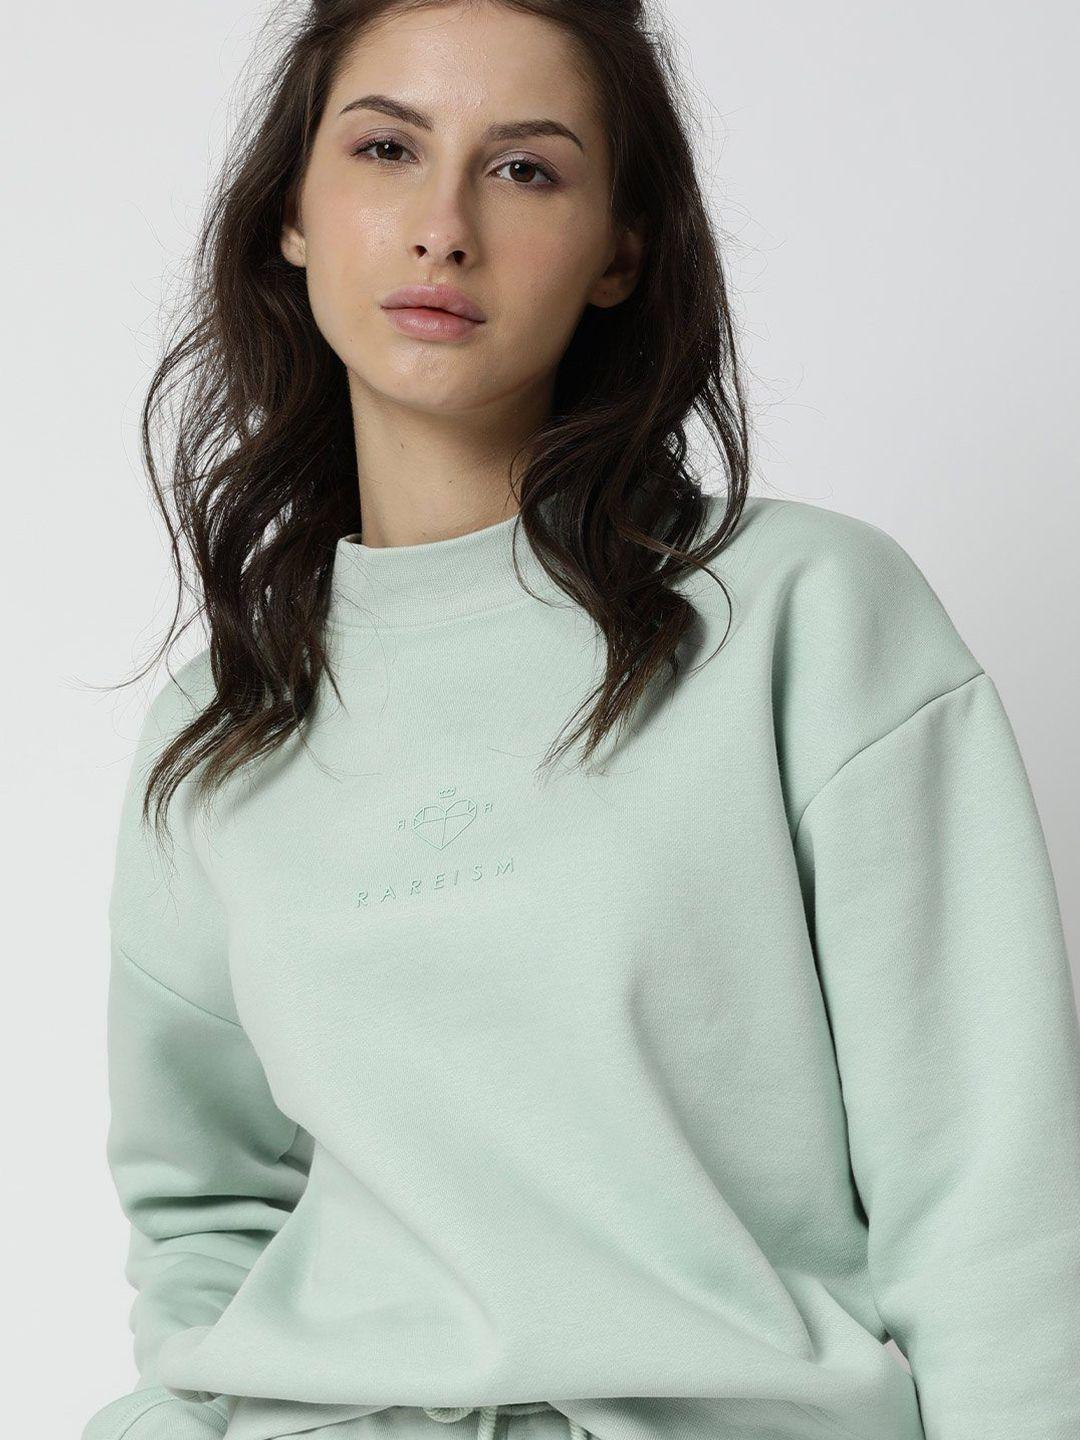 rareism women sea green cotton sweatshirt